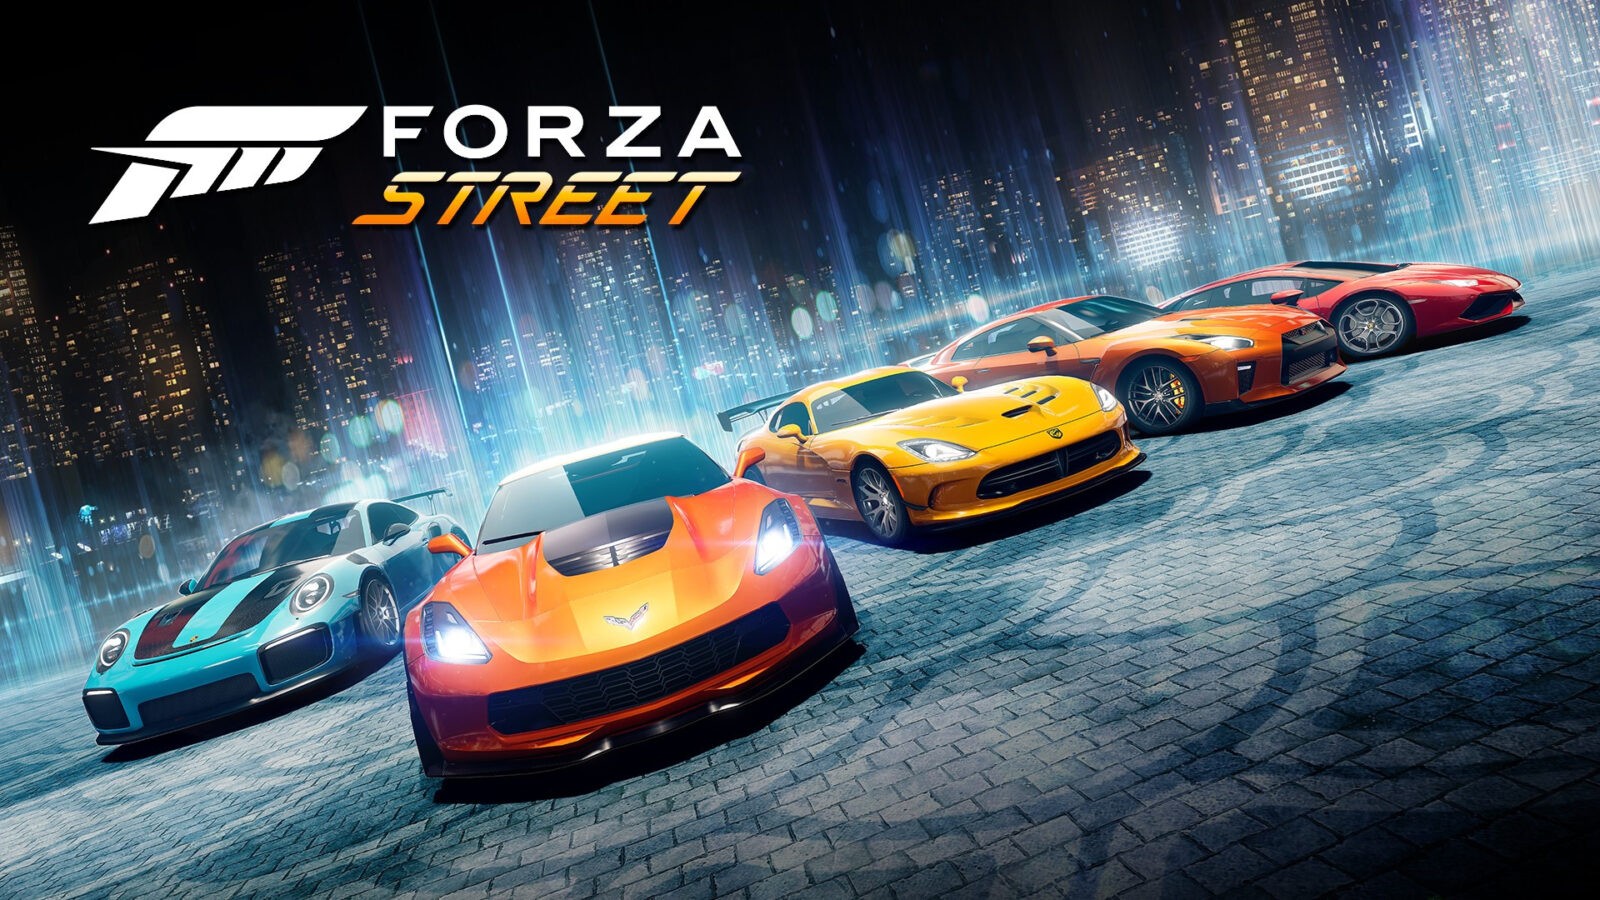 Forza Street dapatkan tanggal rilis untuk platform mobile